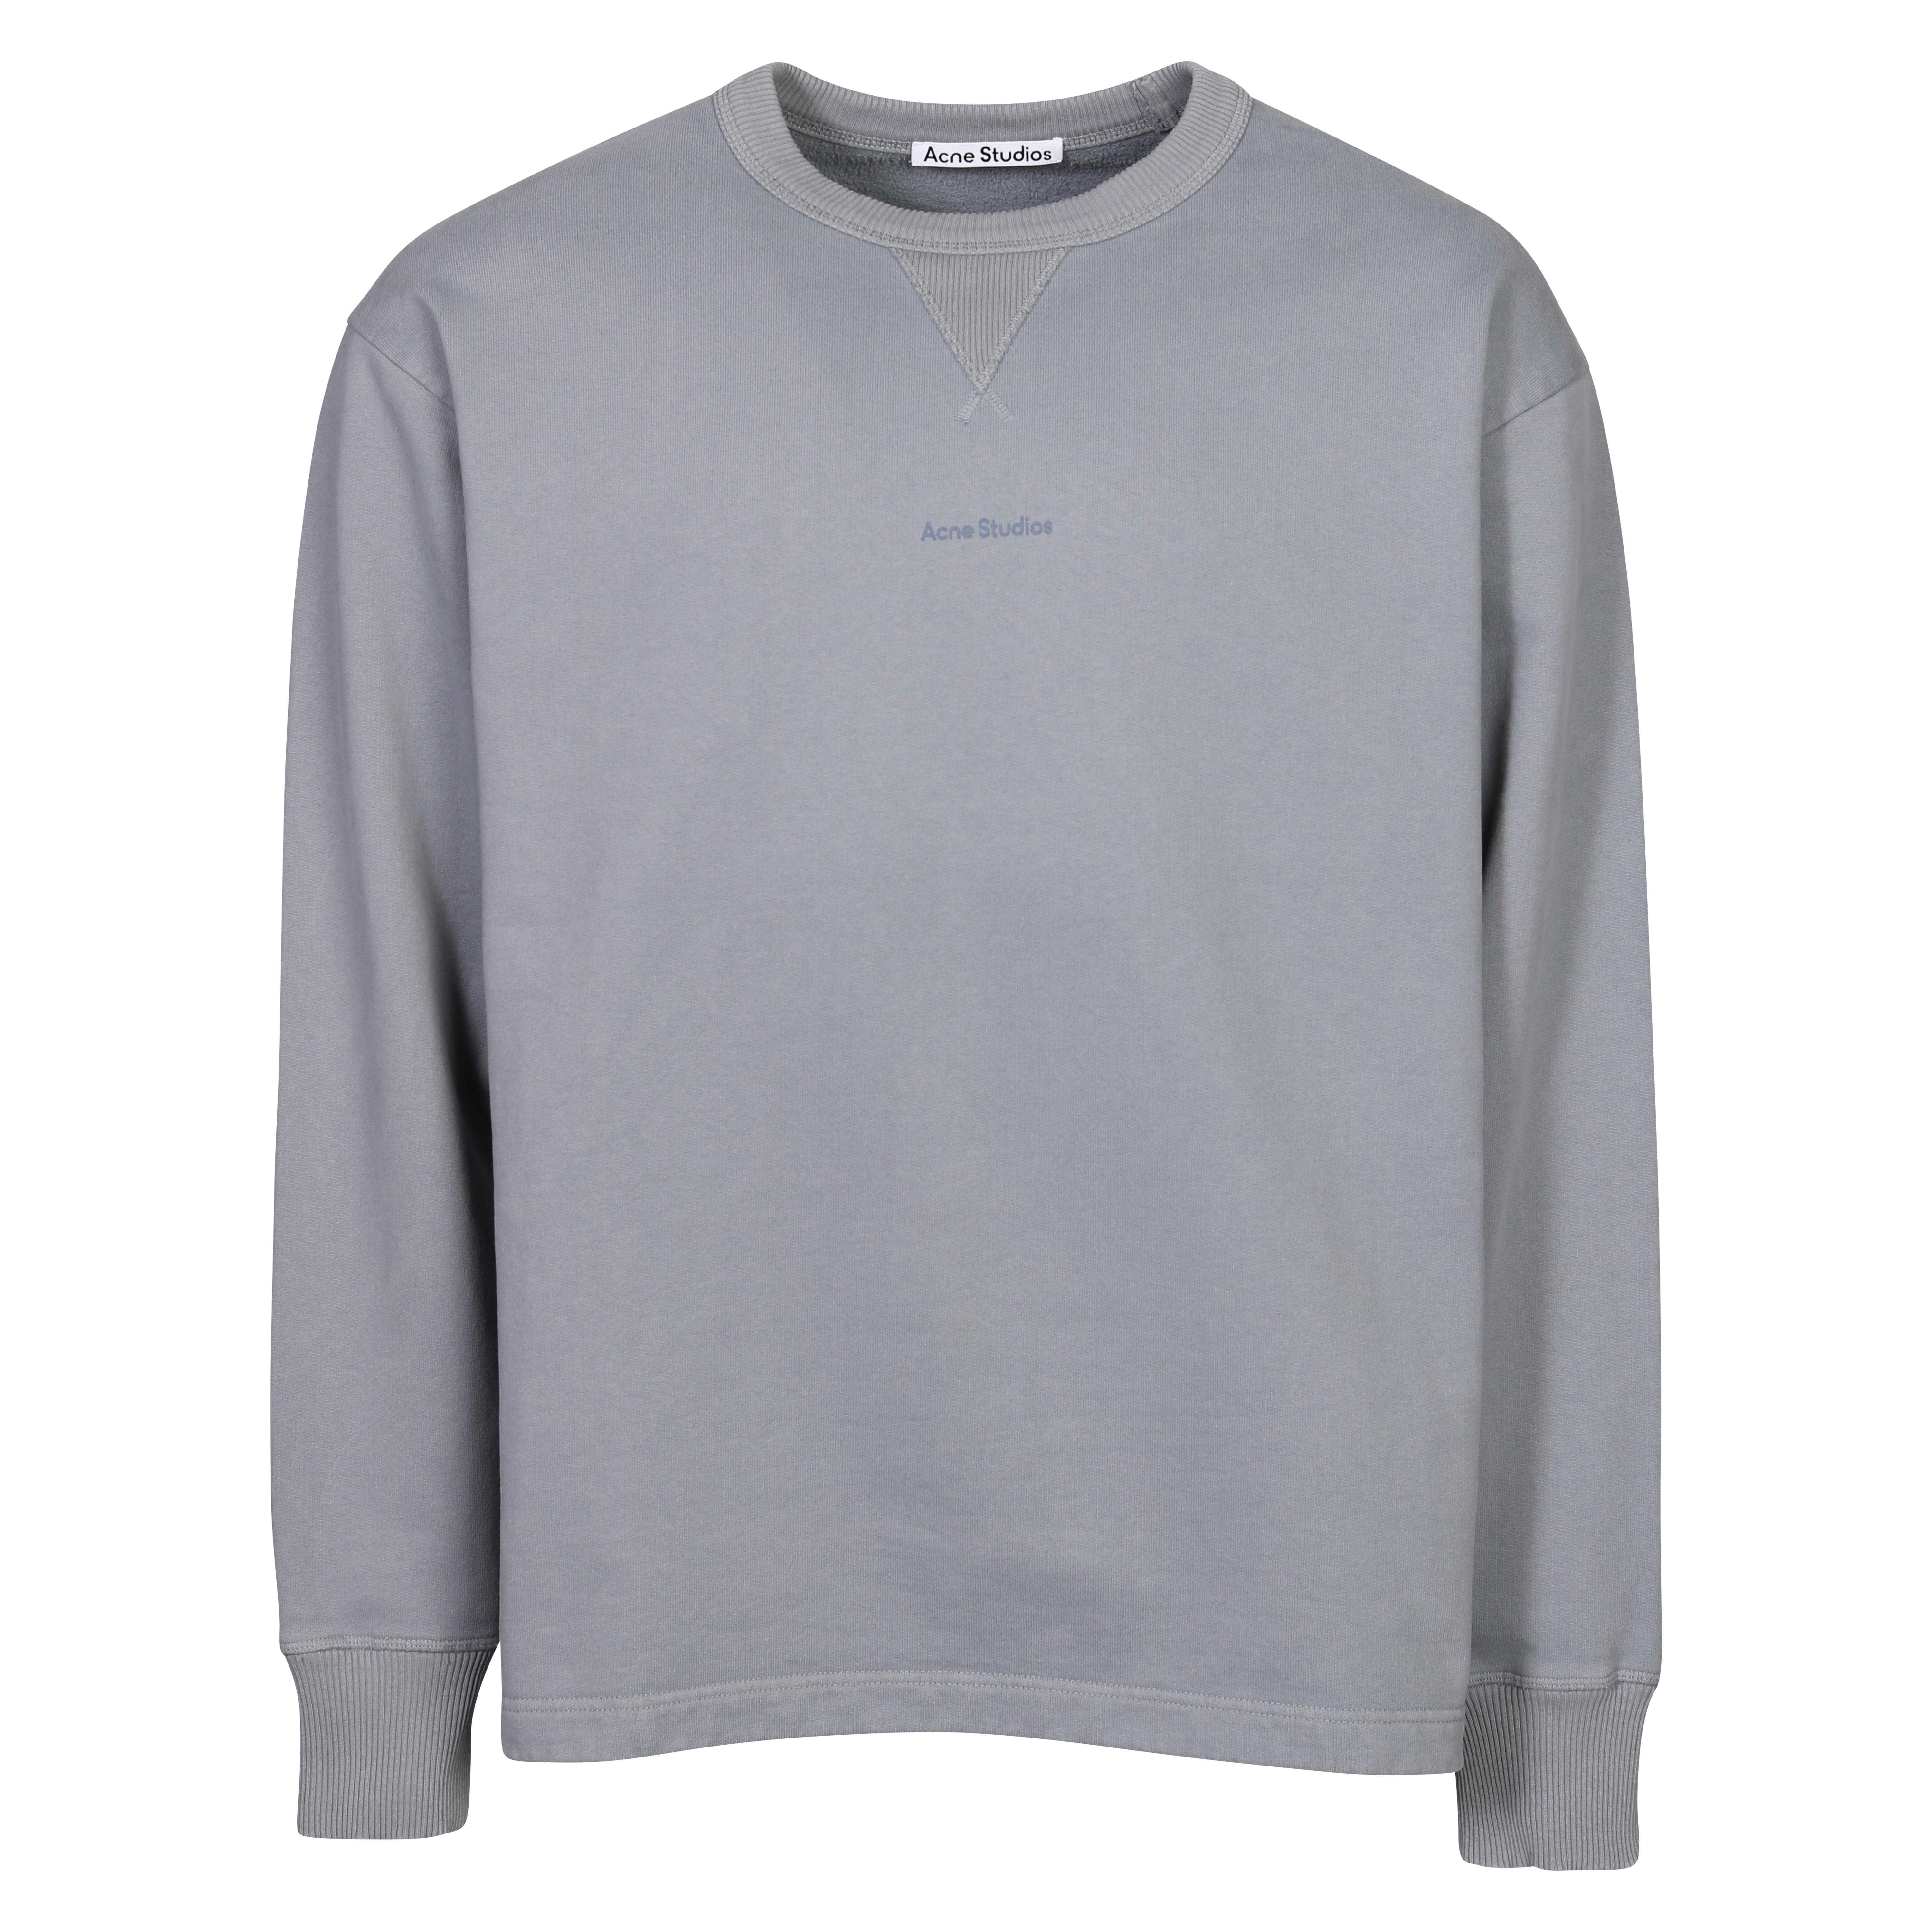 Acne Studios Stamp Sweatshirt in Steel Grey XS